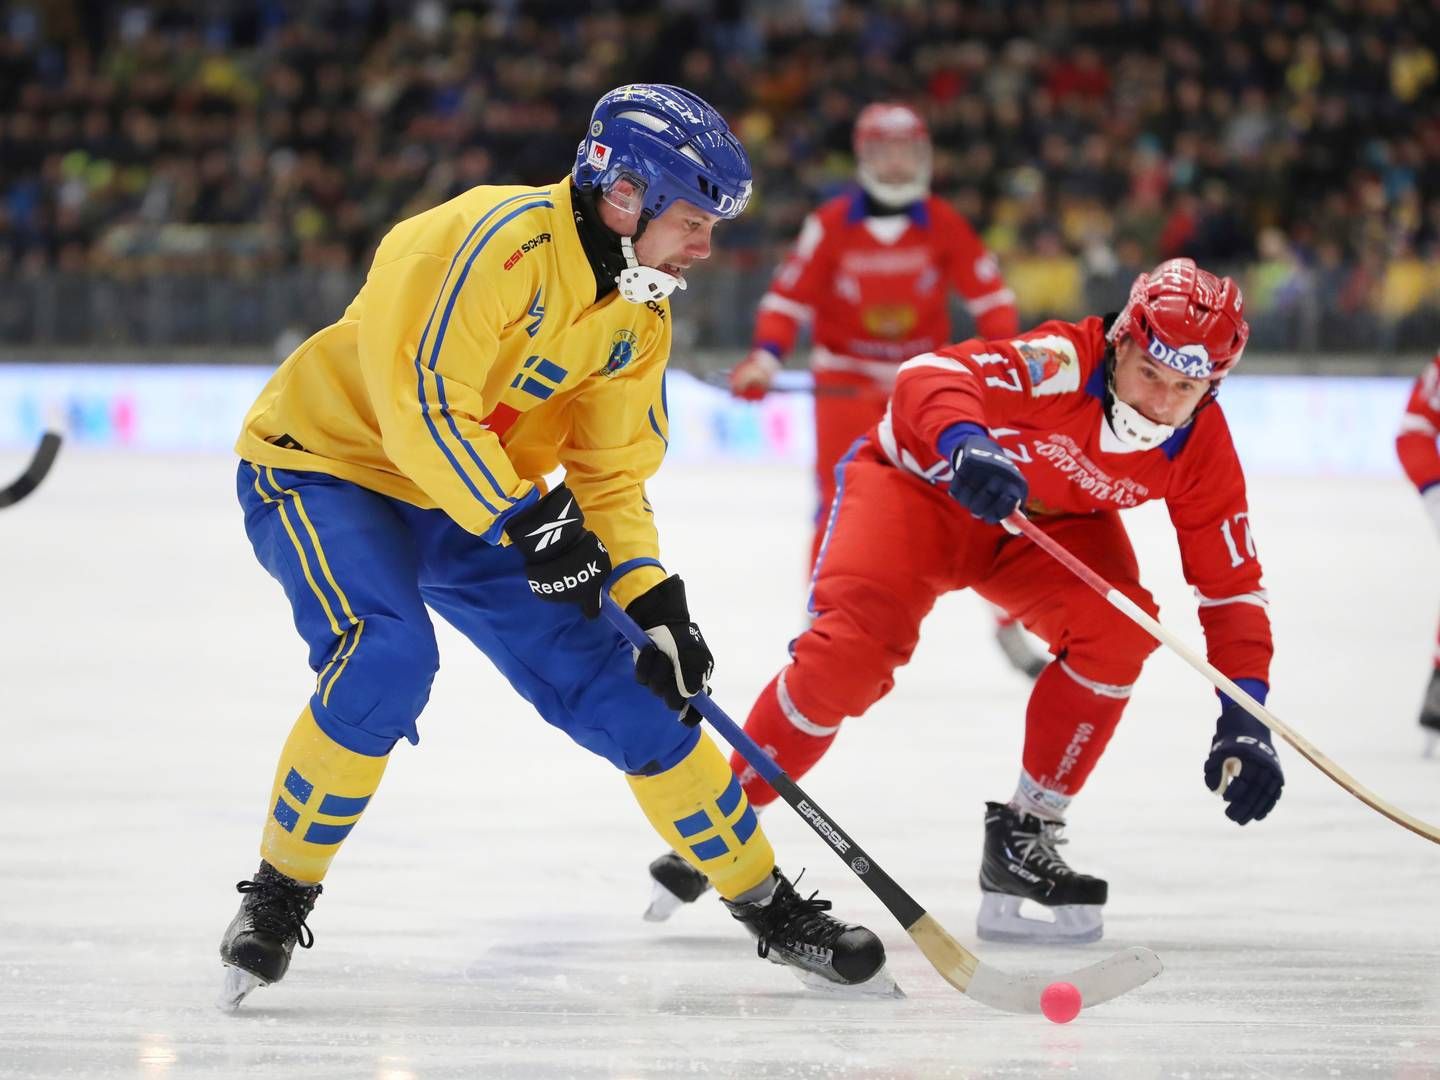 Bandy er en hockey-lignende sport, der spilles på en isbane. | Foto: Adam Ihse/AP/Ritzau Scanpix